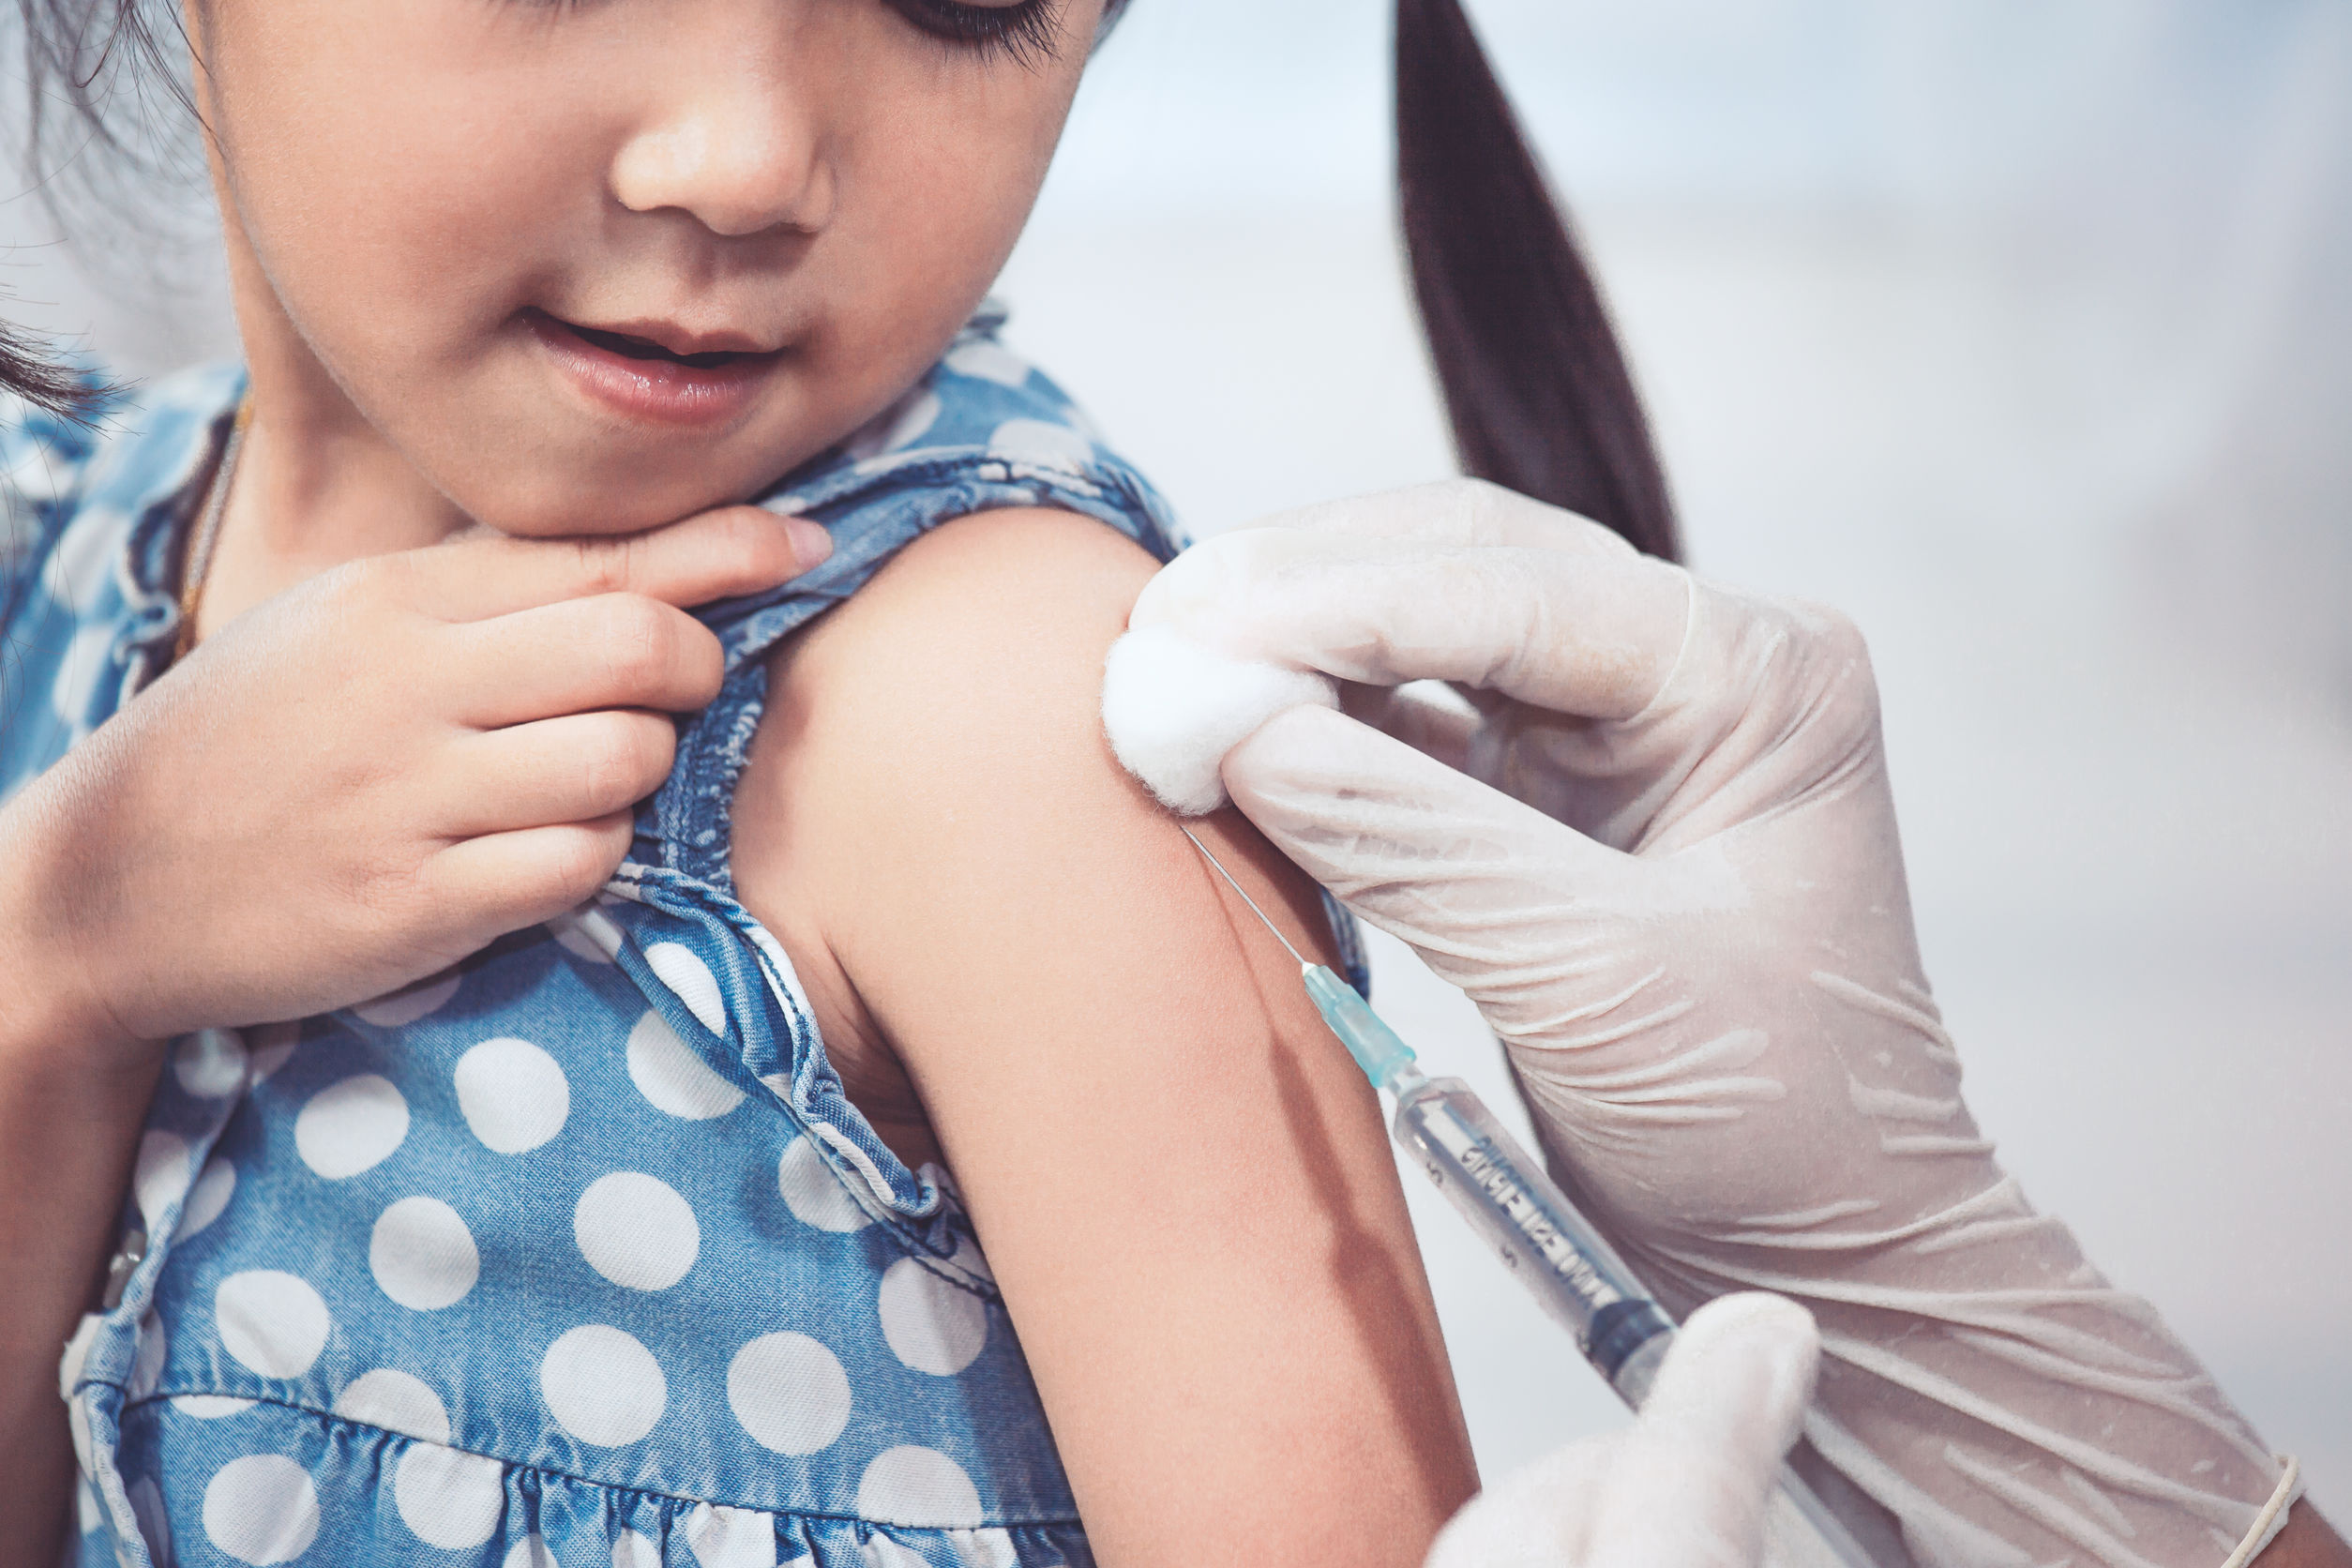 Prikangst kind; bang voor naalden / vaccinatie